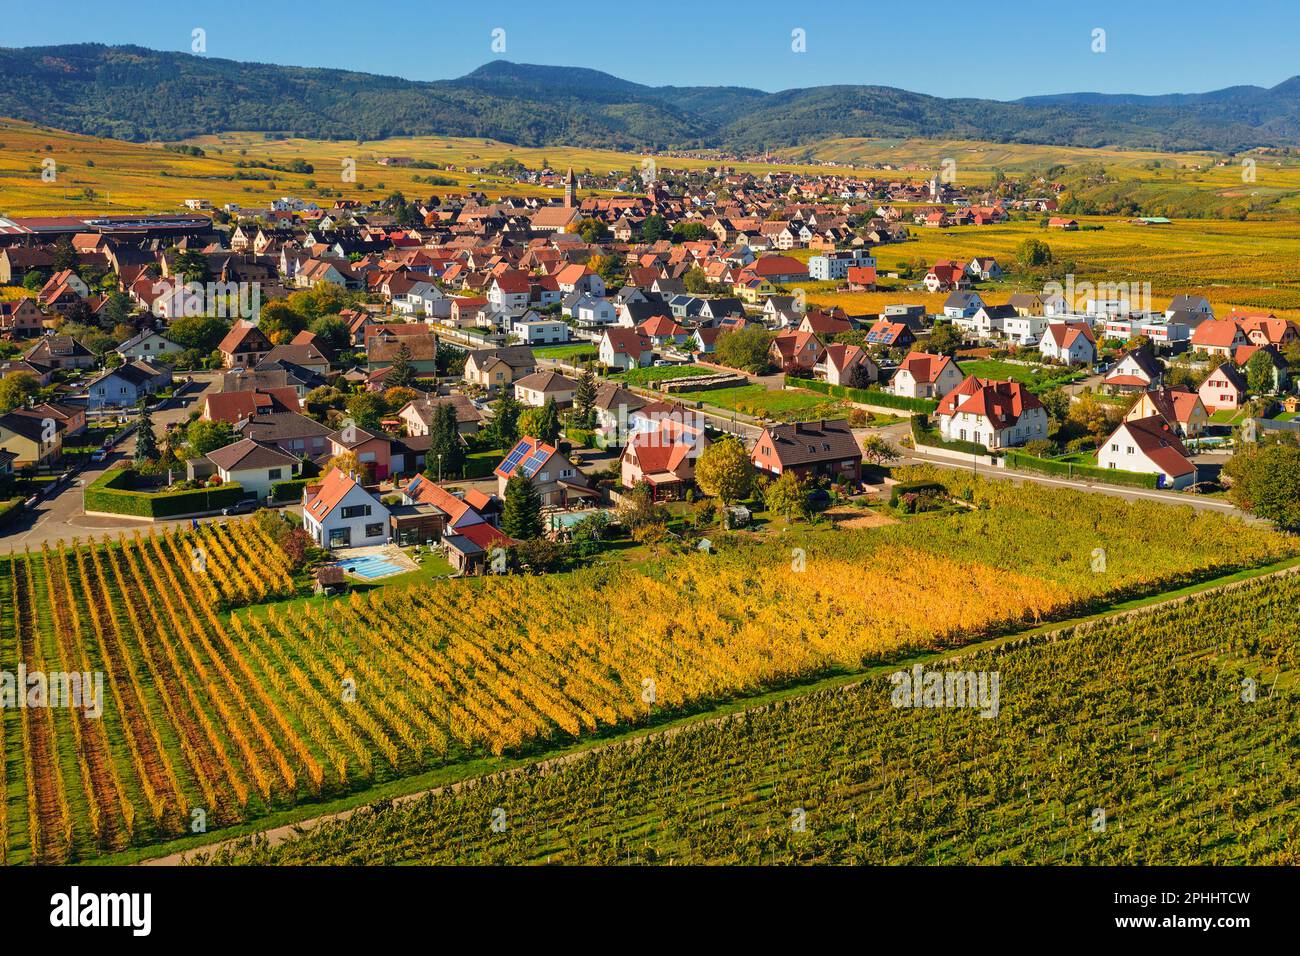 Vue aérienne de la campagne d'automne paysage d'Alsace avec les villages pittoresques de Bennwihr et Riquewihr au milieu des terrasses et des collines des vignobles, Alsac Banque D'Images